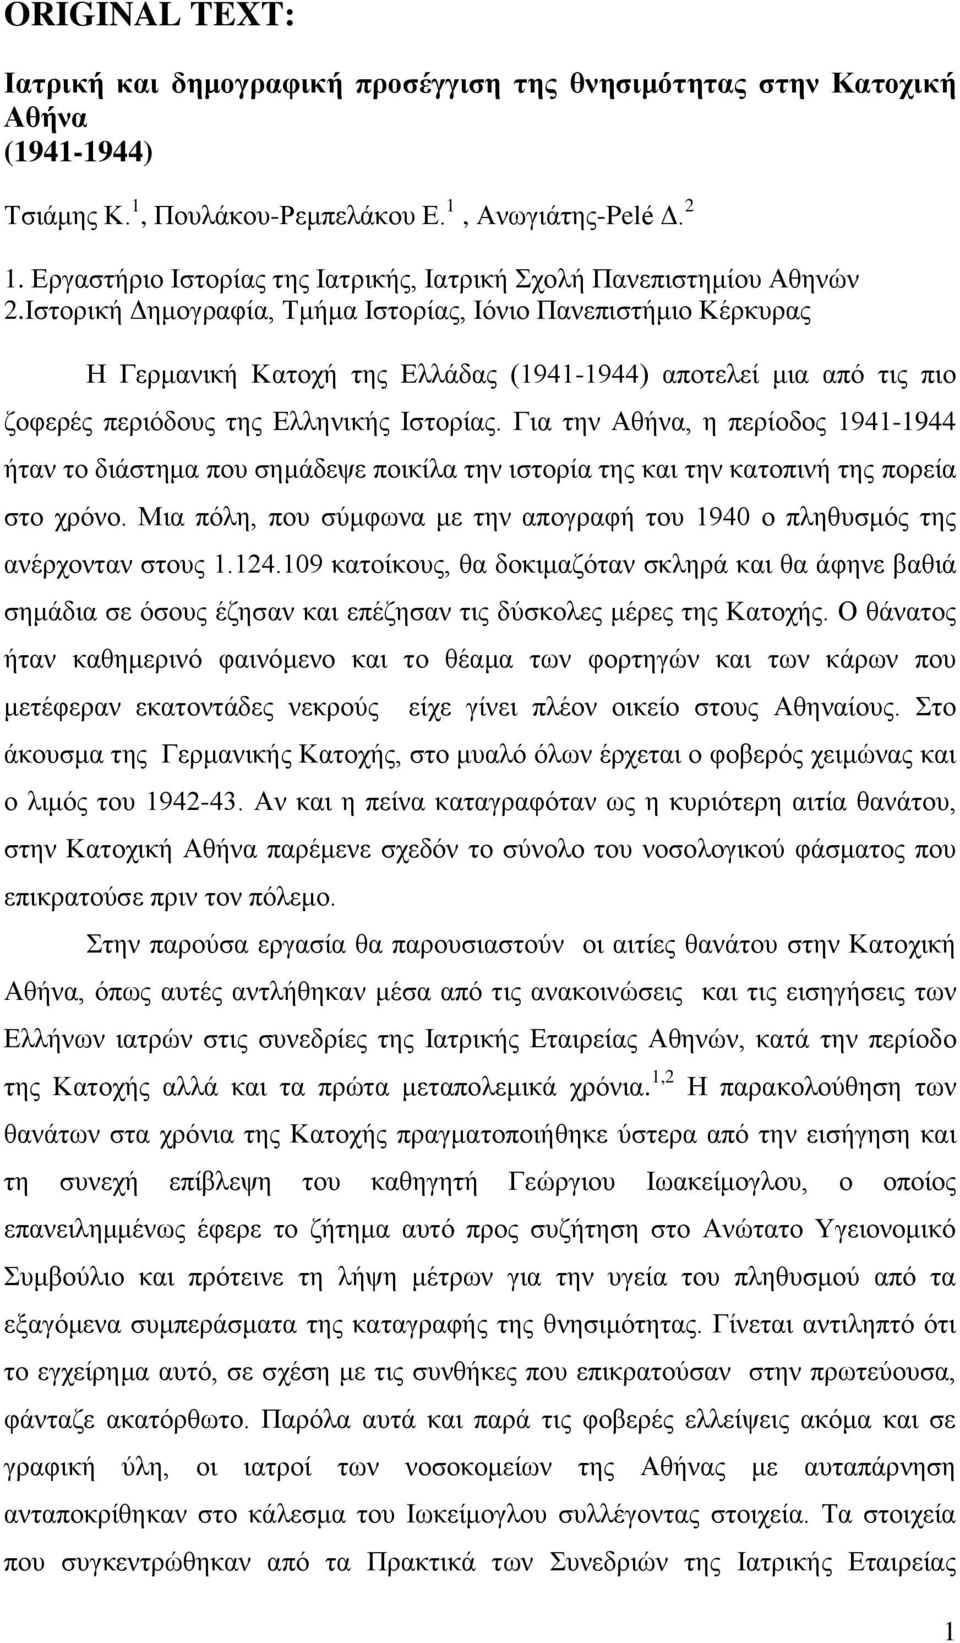 Ιστορική Δημογραφία, Τμήμα Ιστορίας, Ιόνιο Πανεπιστήμιο Κέρκυρας Η Γερμανική Κατοχή της Ελλάδας (1941-1944) αποτελεί μια από τις πιο ζοφερές περιόδους της Ελληνικής Ιστορίας.